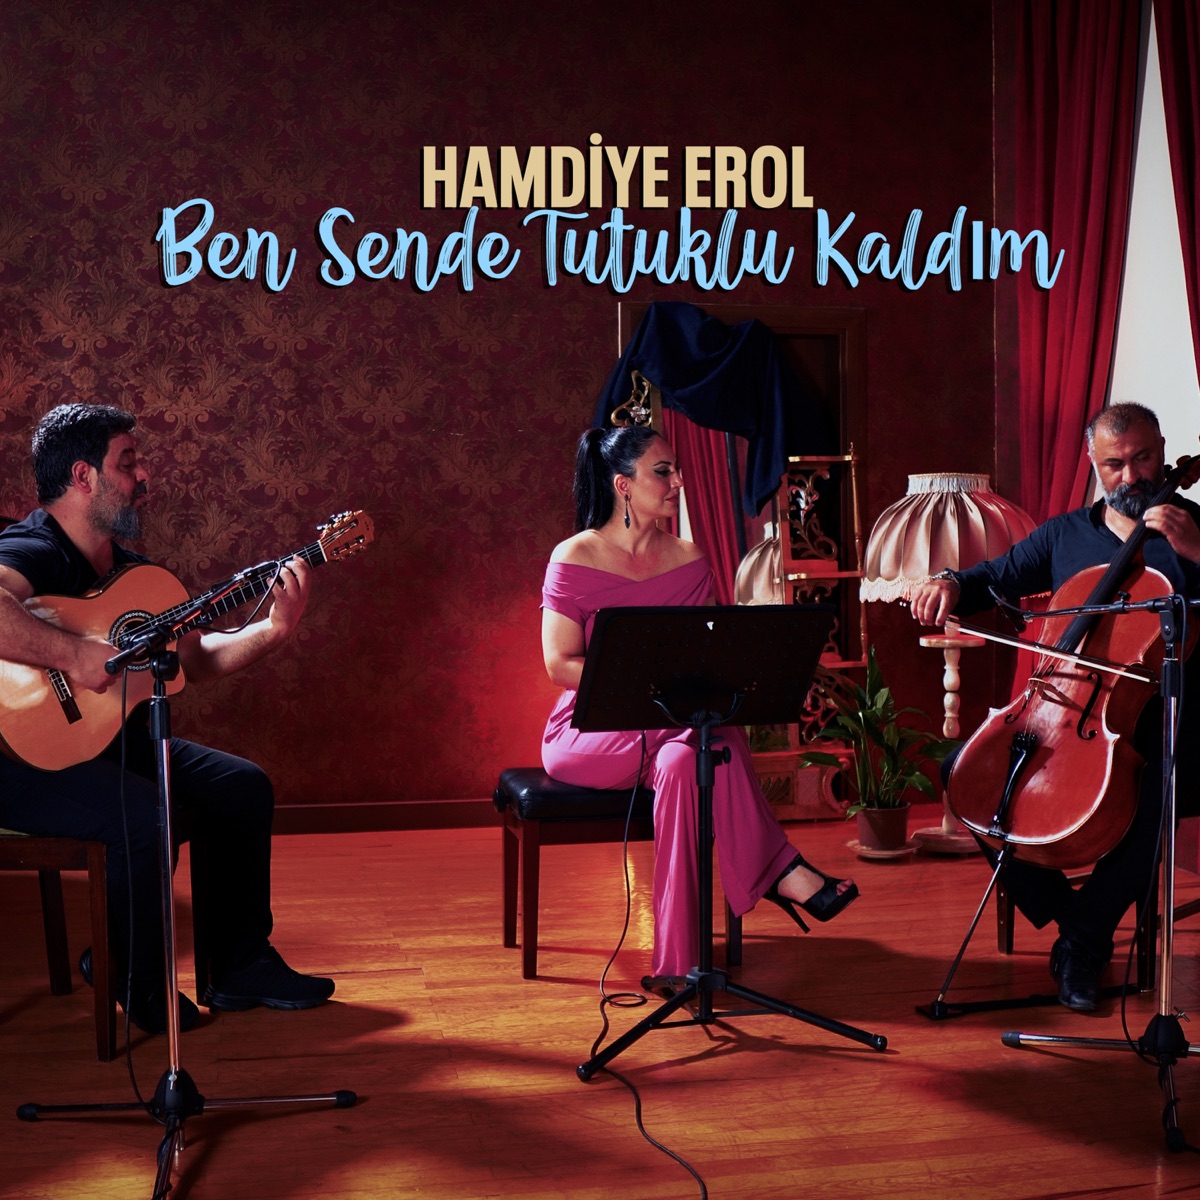 Ben Sende Tutuklu Kaldım - Single by Hamdiye Erol on Apple Music